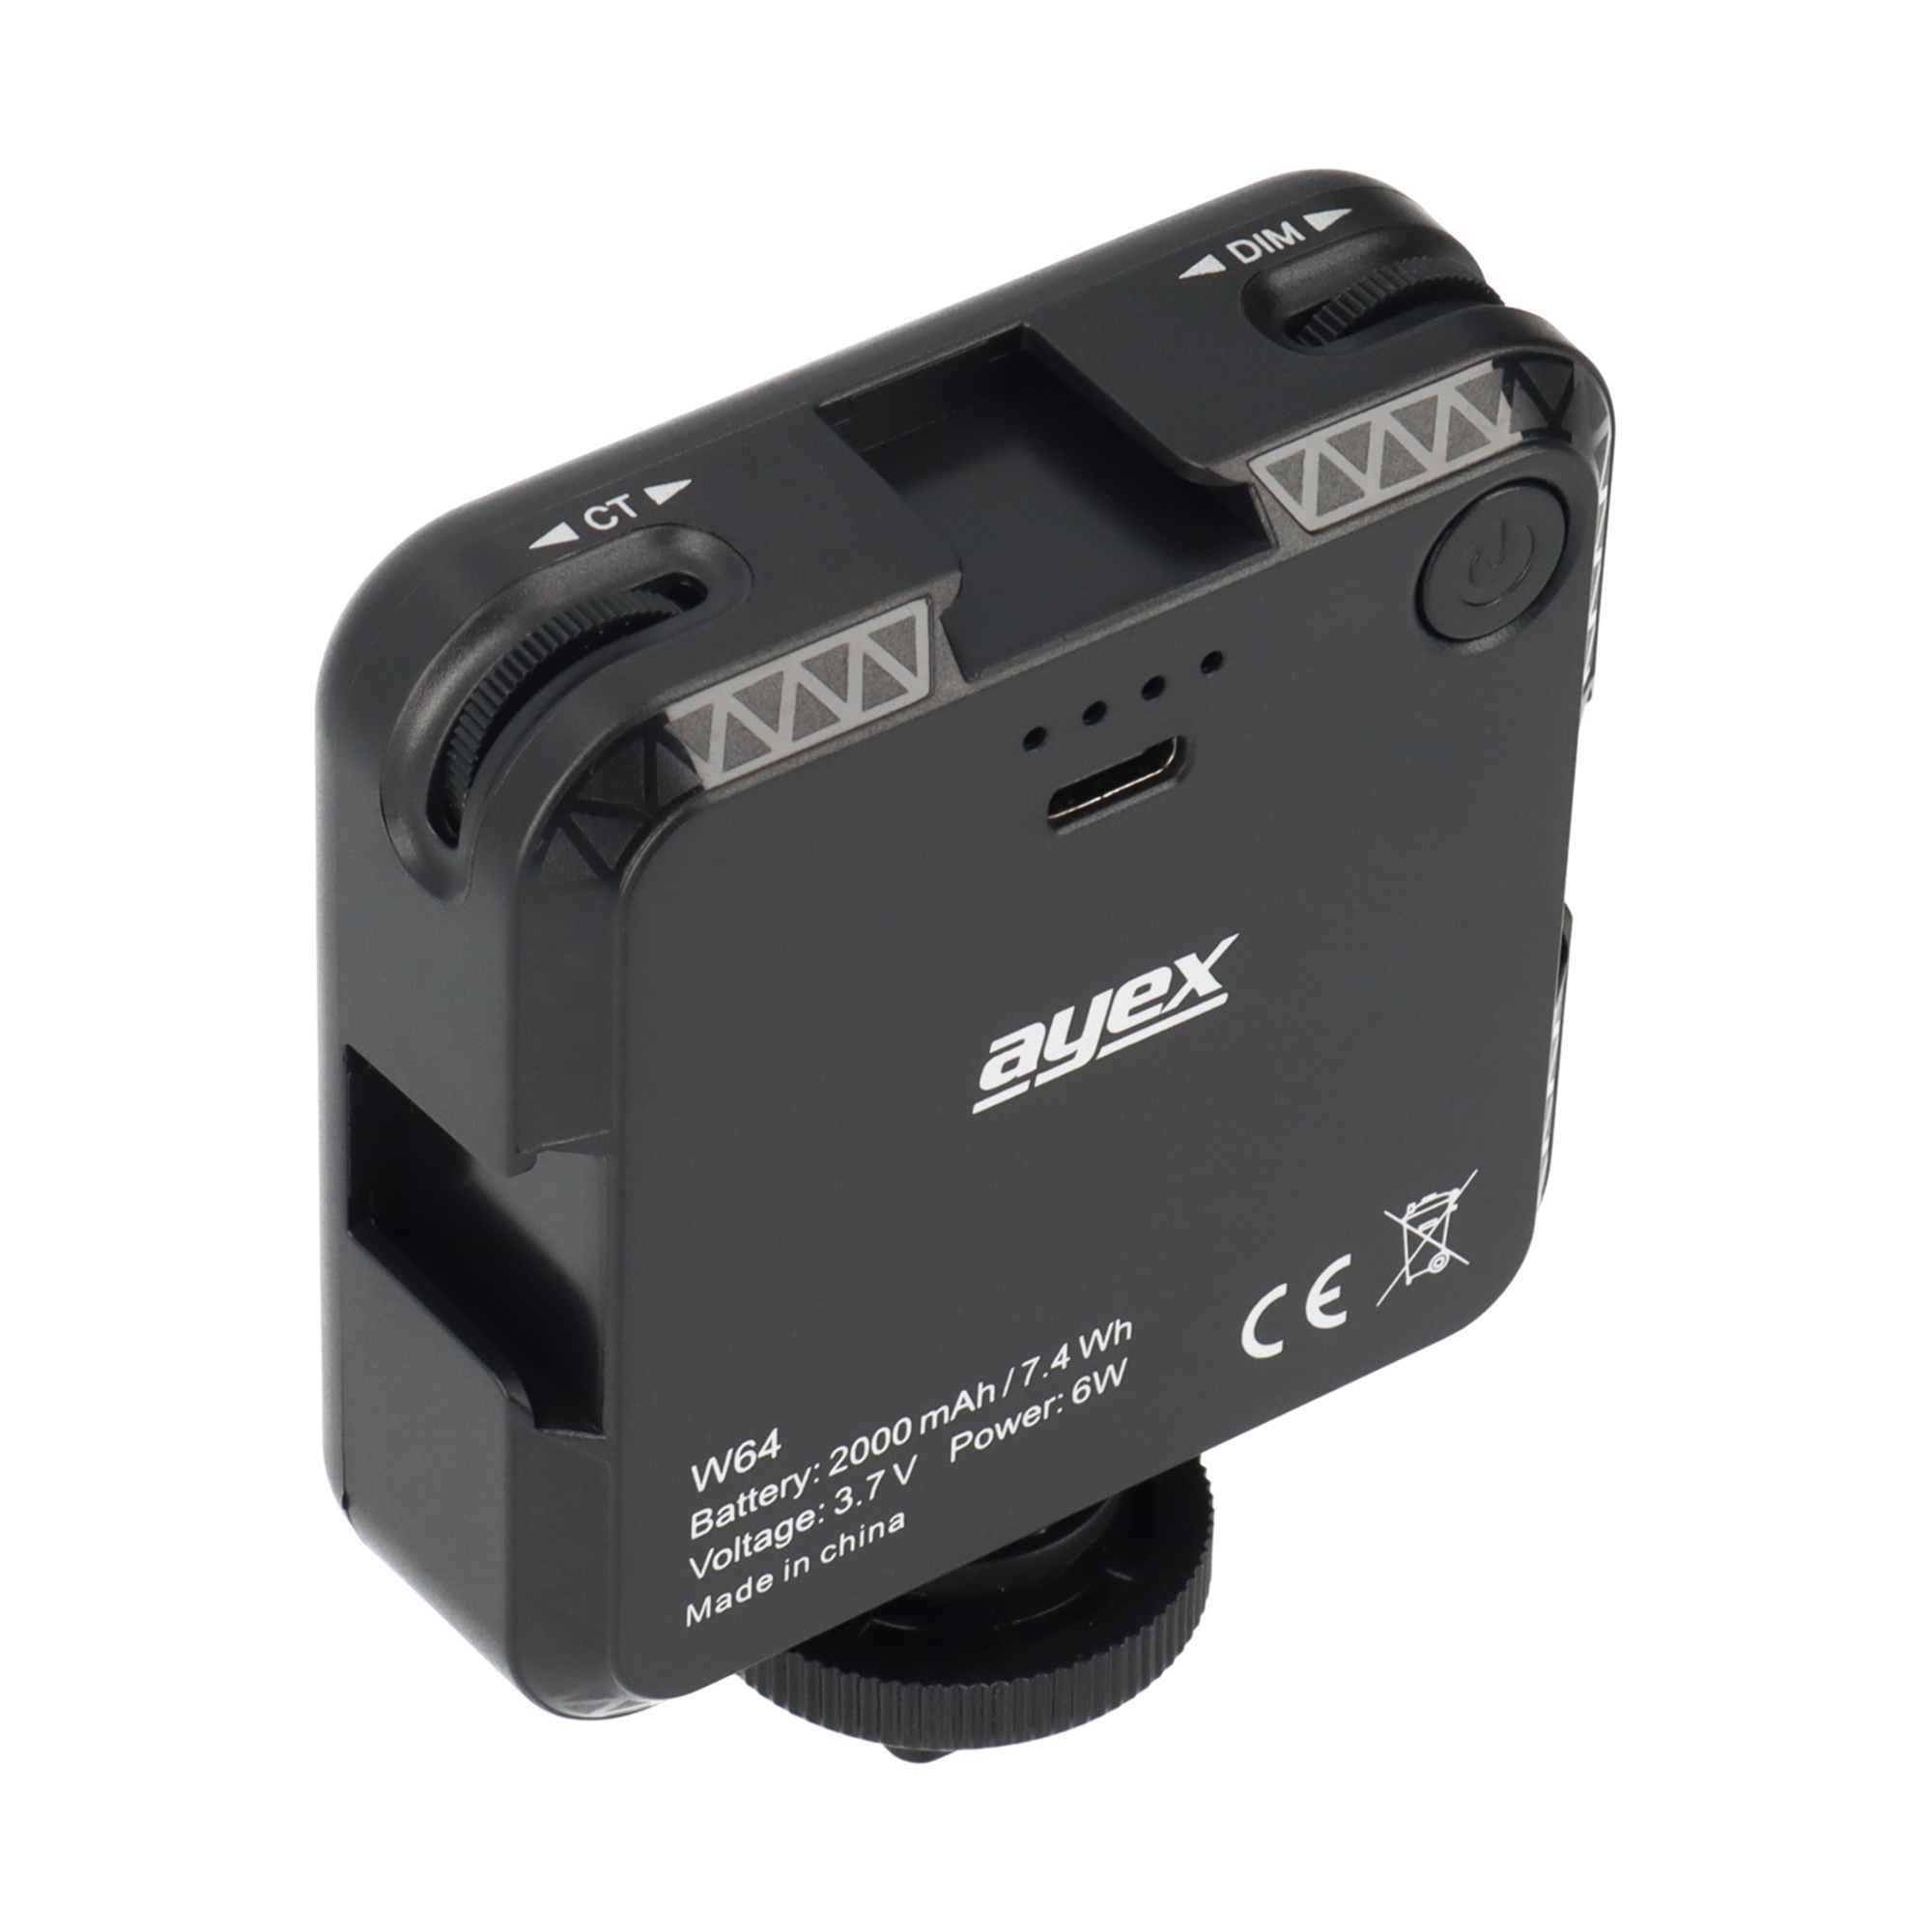 AYEX W64 - Kamera Farbtemperatur mit Bicolor 2500k 6500k Videoleuchte Akku Akku 2000mAh für Deckel